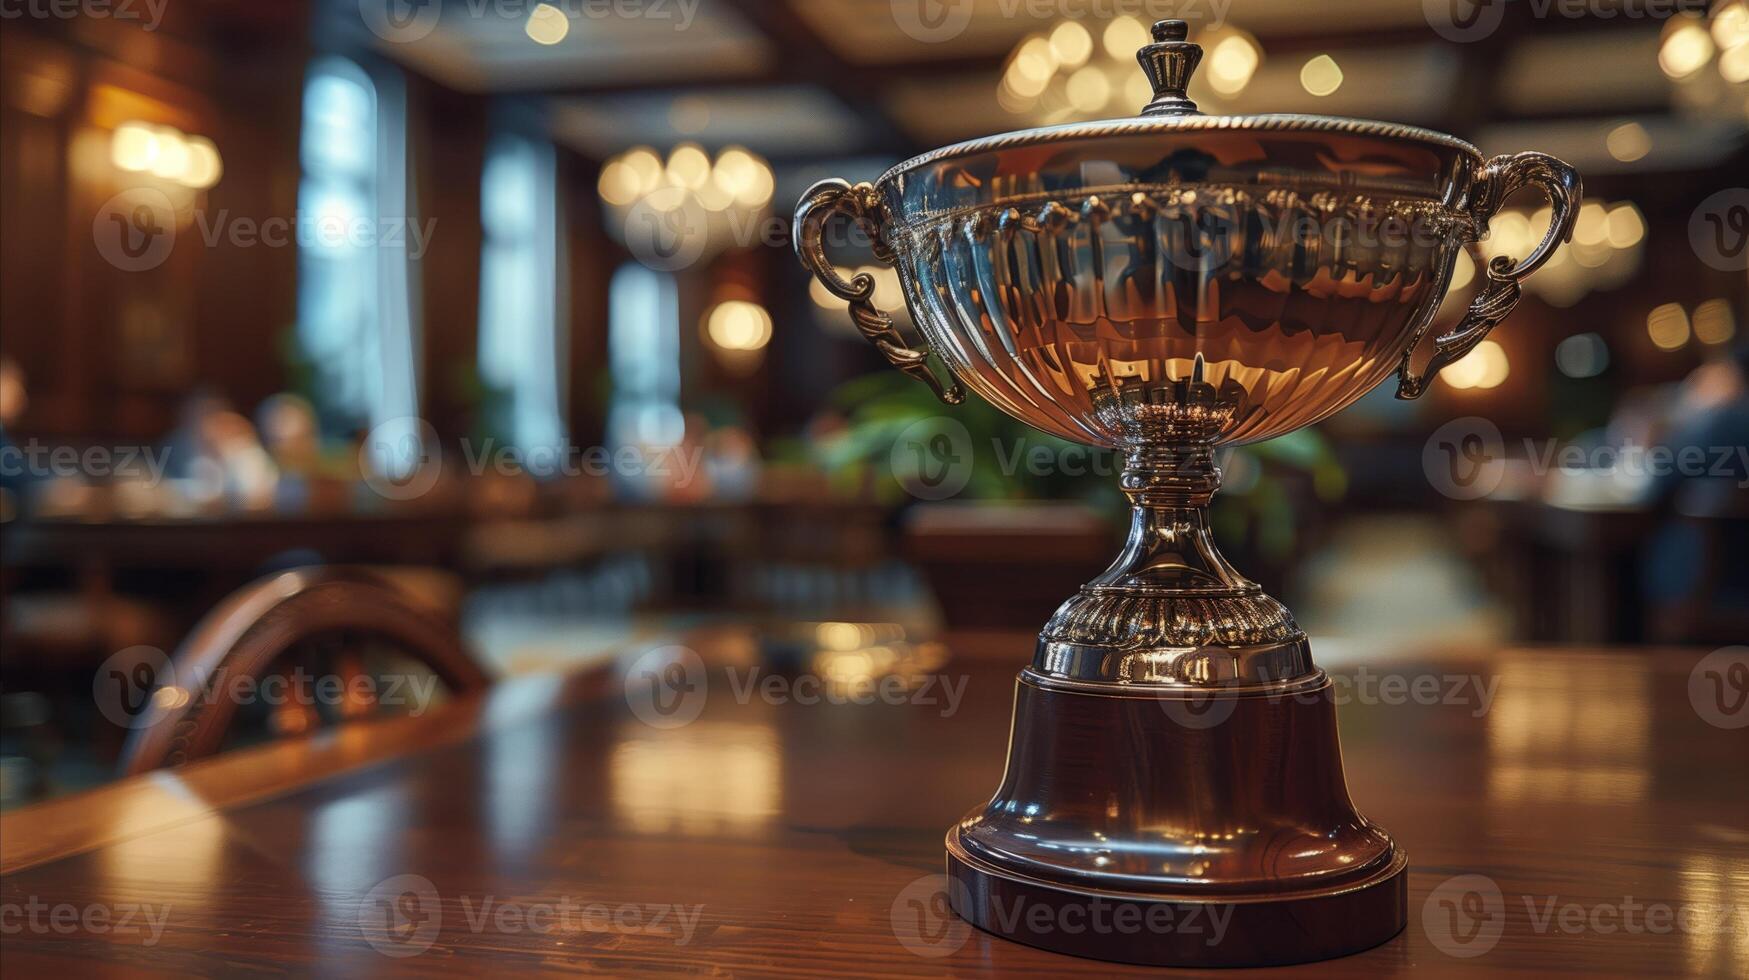 elegante trofeo desplegado en de madera mesa en poco iluminado habitación foto